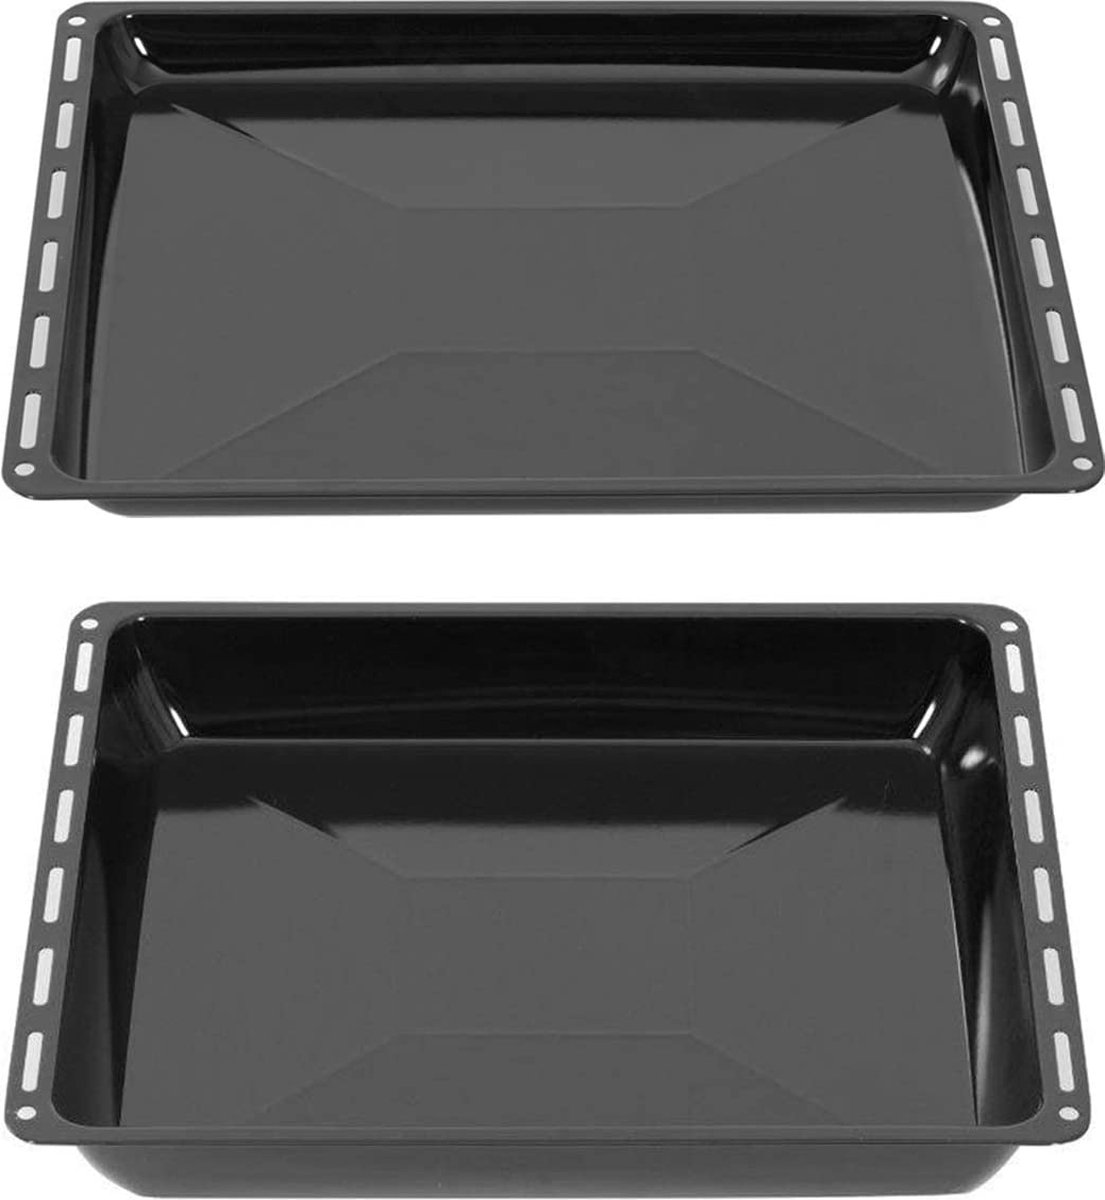 ICQN Ovenbakplaat Set - 2 stuks - 465x370x30 mm en 465x370x60 mm - Geëmailleerd